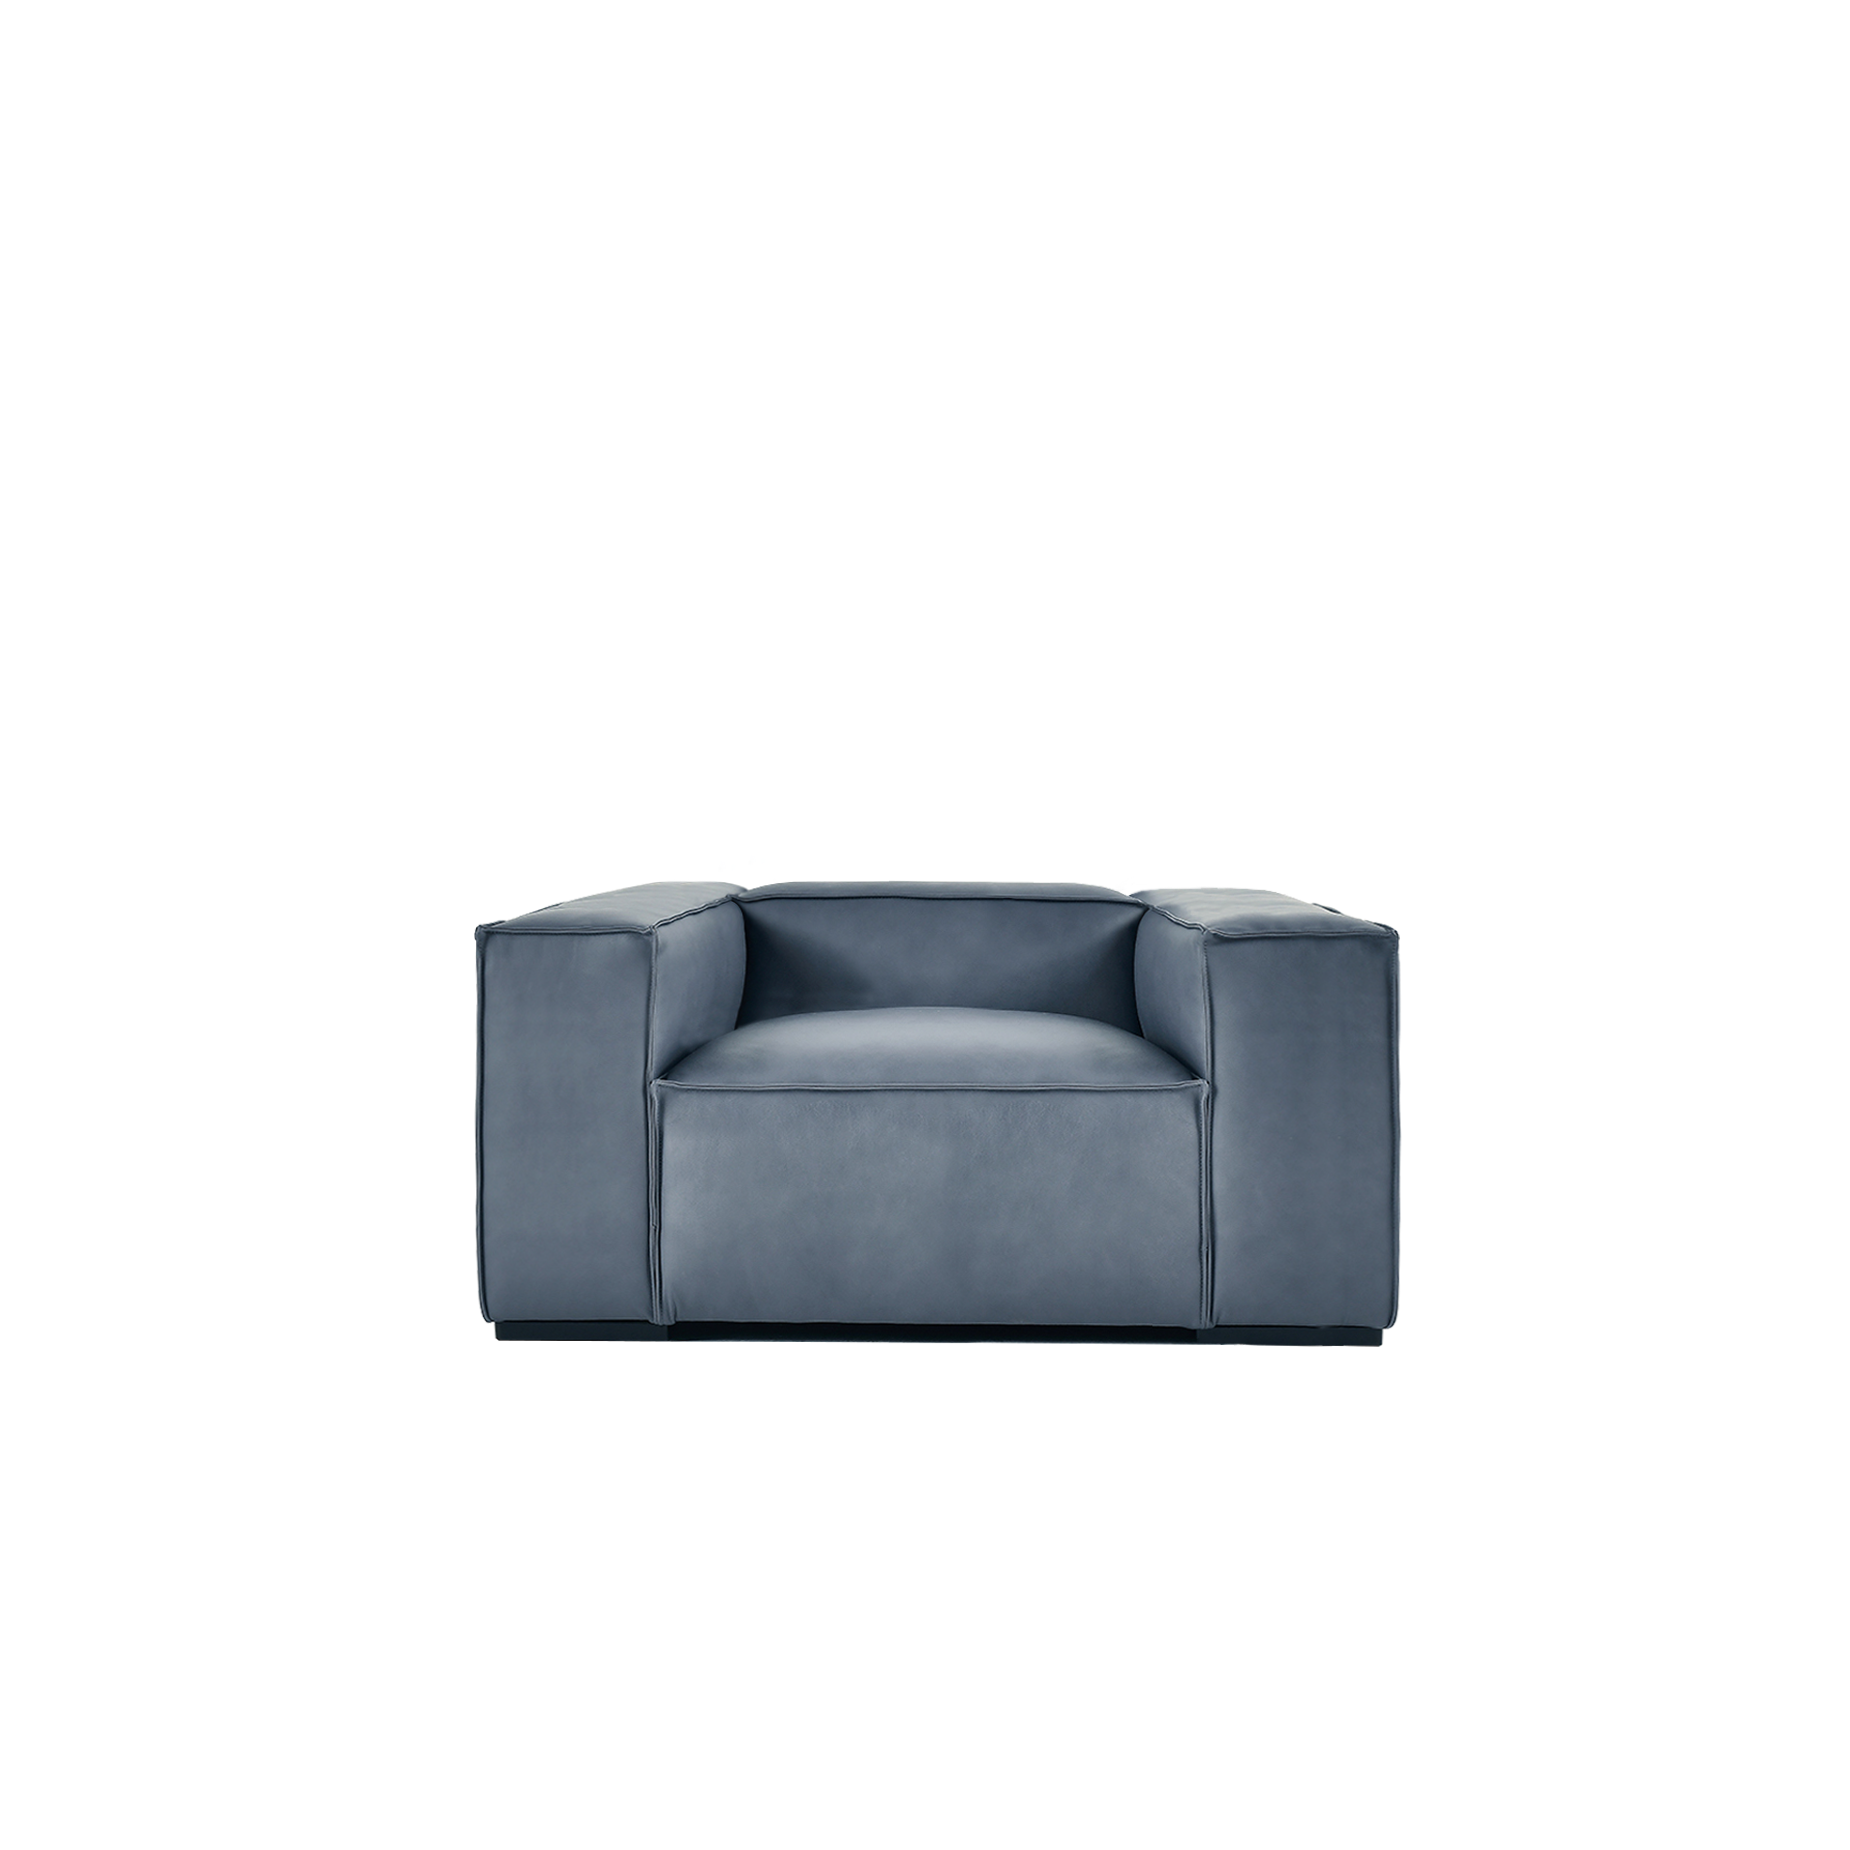 (주)도이치 DOICH ®    PEN16 modular sofa 도이치 펜16 1인 모듈소파  [4주 주문제작]